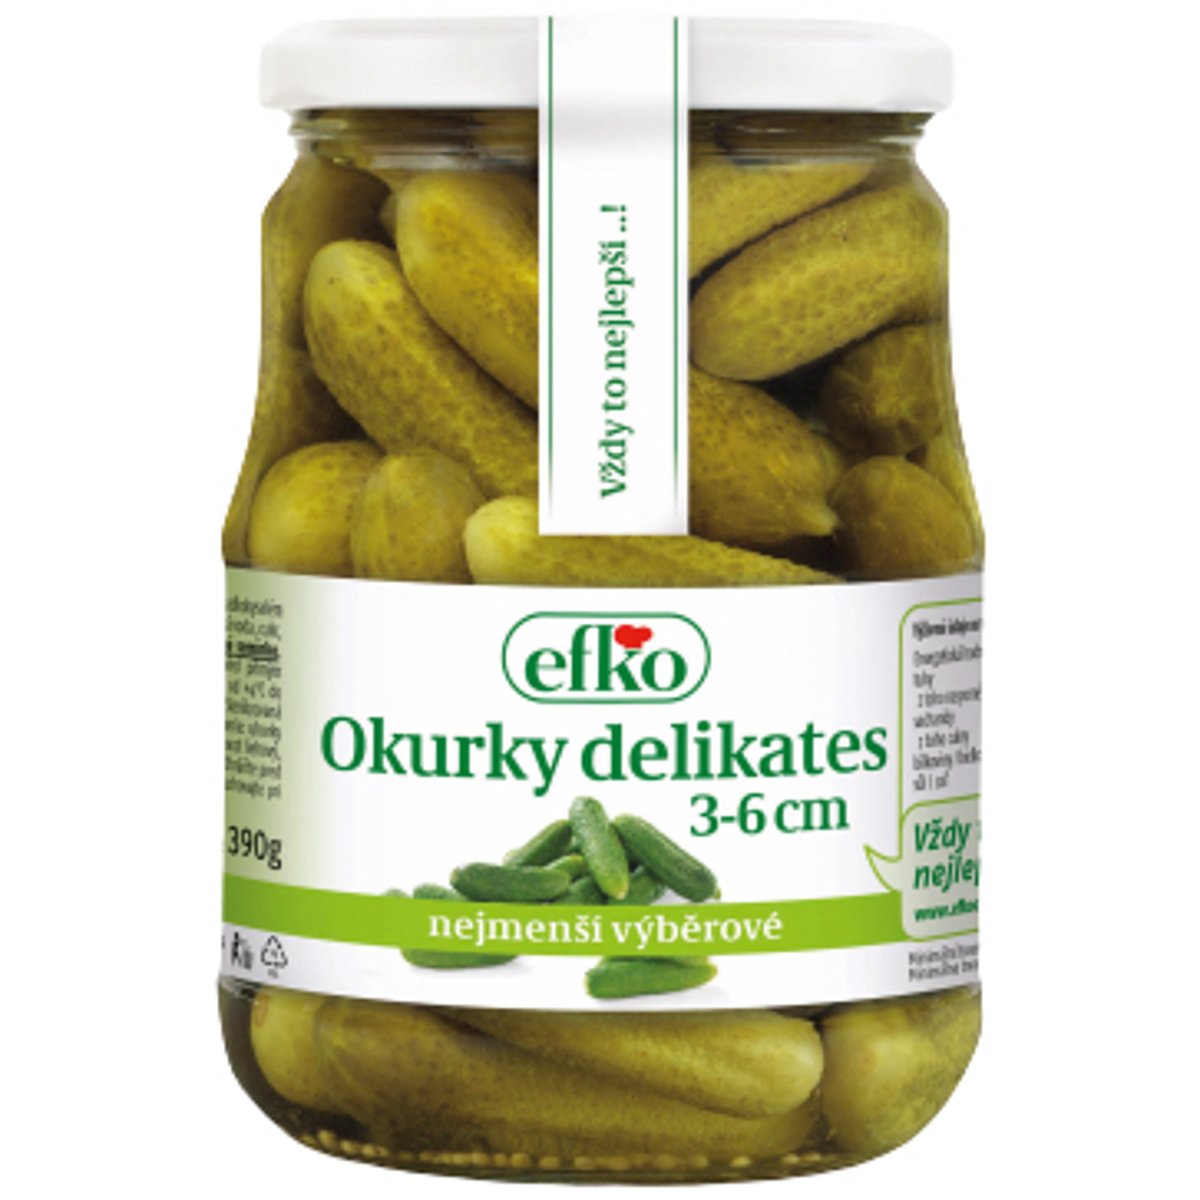 Efko Okurky delikates 3-6 cm